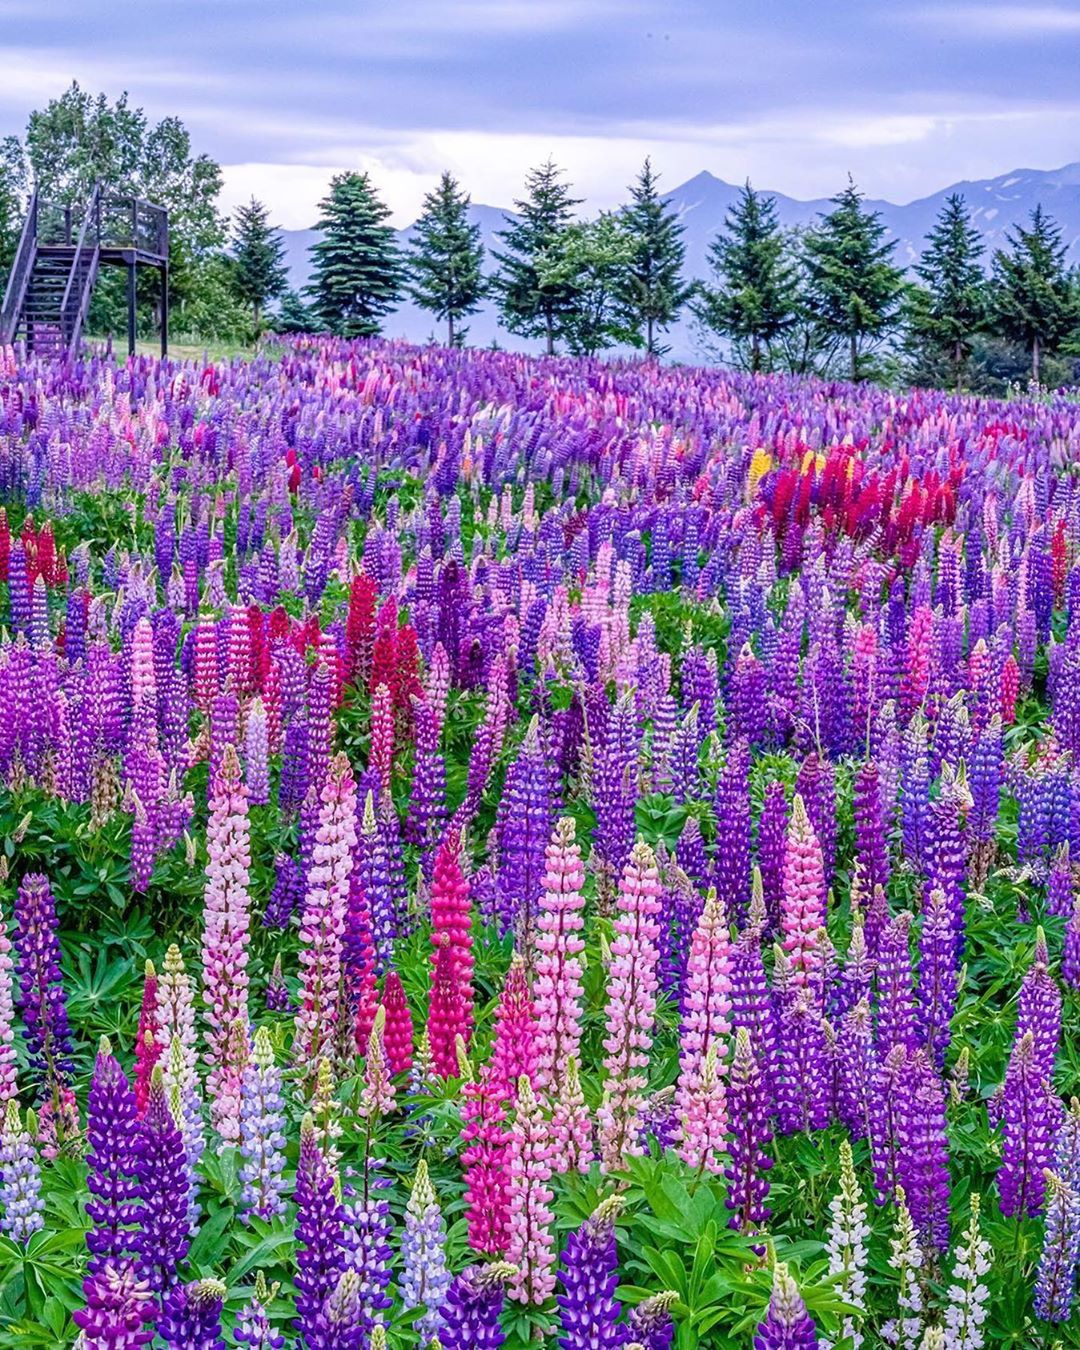 Retrip News Retrip 北海道 北海道上富良野町の フラワーランドかみふらの では 6月から9月にかけて様々な花 を楽しむことができます 現在見頃を迎えているのがこちら Wacoca